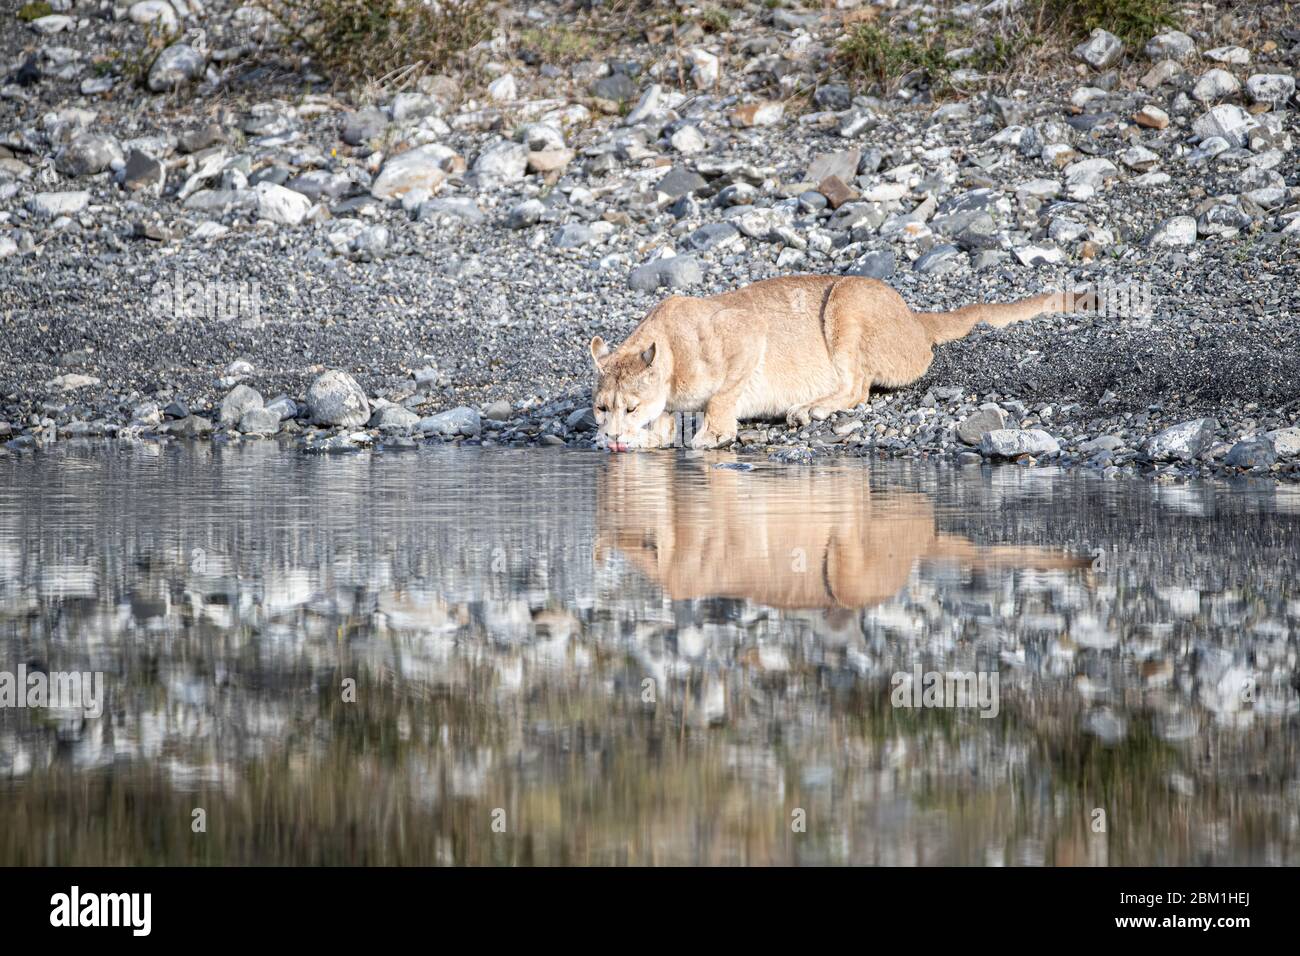 Alleinstehende Erwachsene Hündin puma im hellen Sonnenlicht trinkt aus einem See mit ihrem Spiegelbild im Wasser. Auch bekannt als Cougar oder Berglöwe. Stockfoto